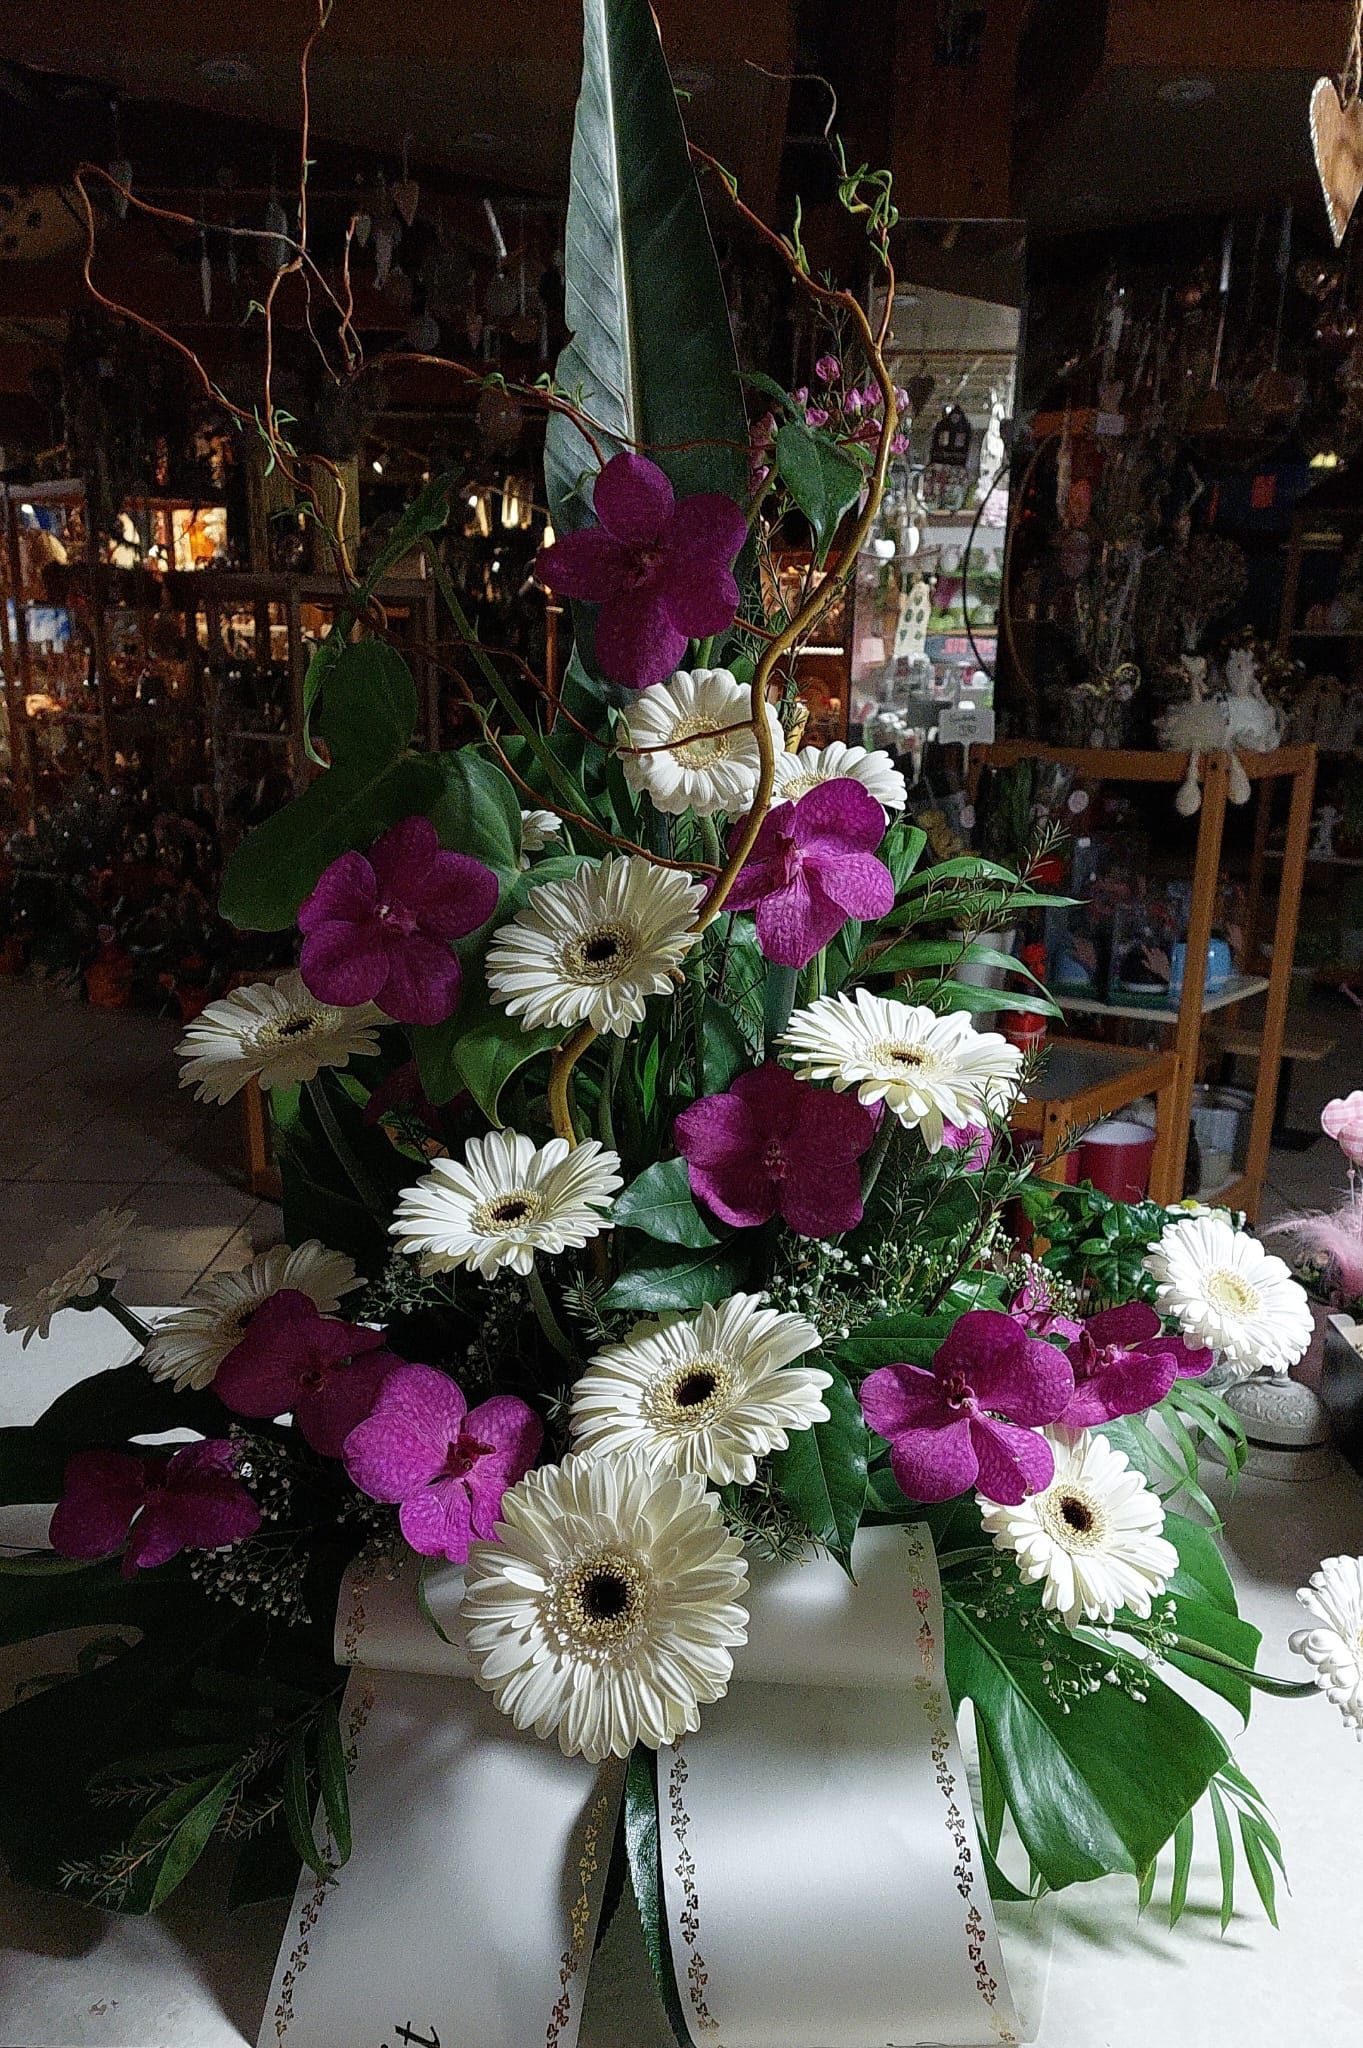 Auf einem Tisch steht ein Strauß violetter und weißer Blumen.